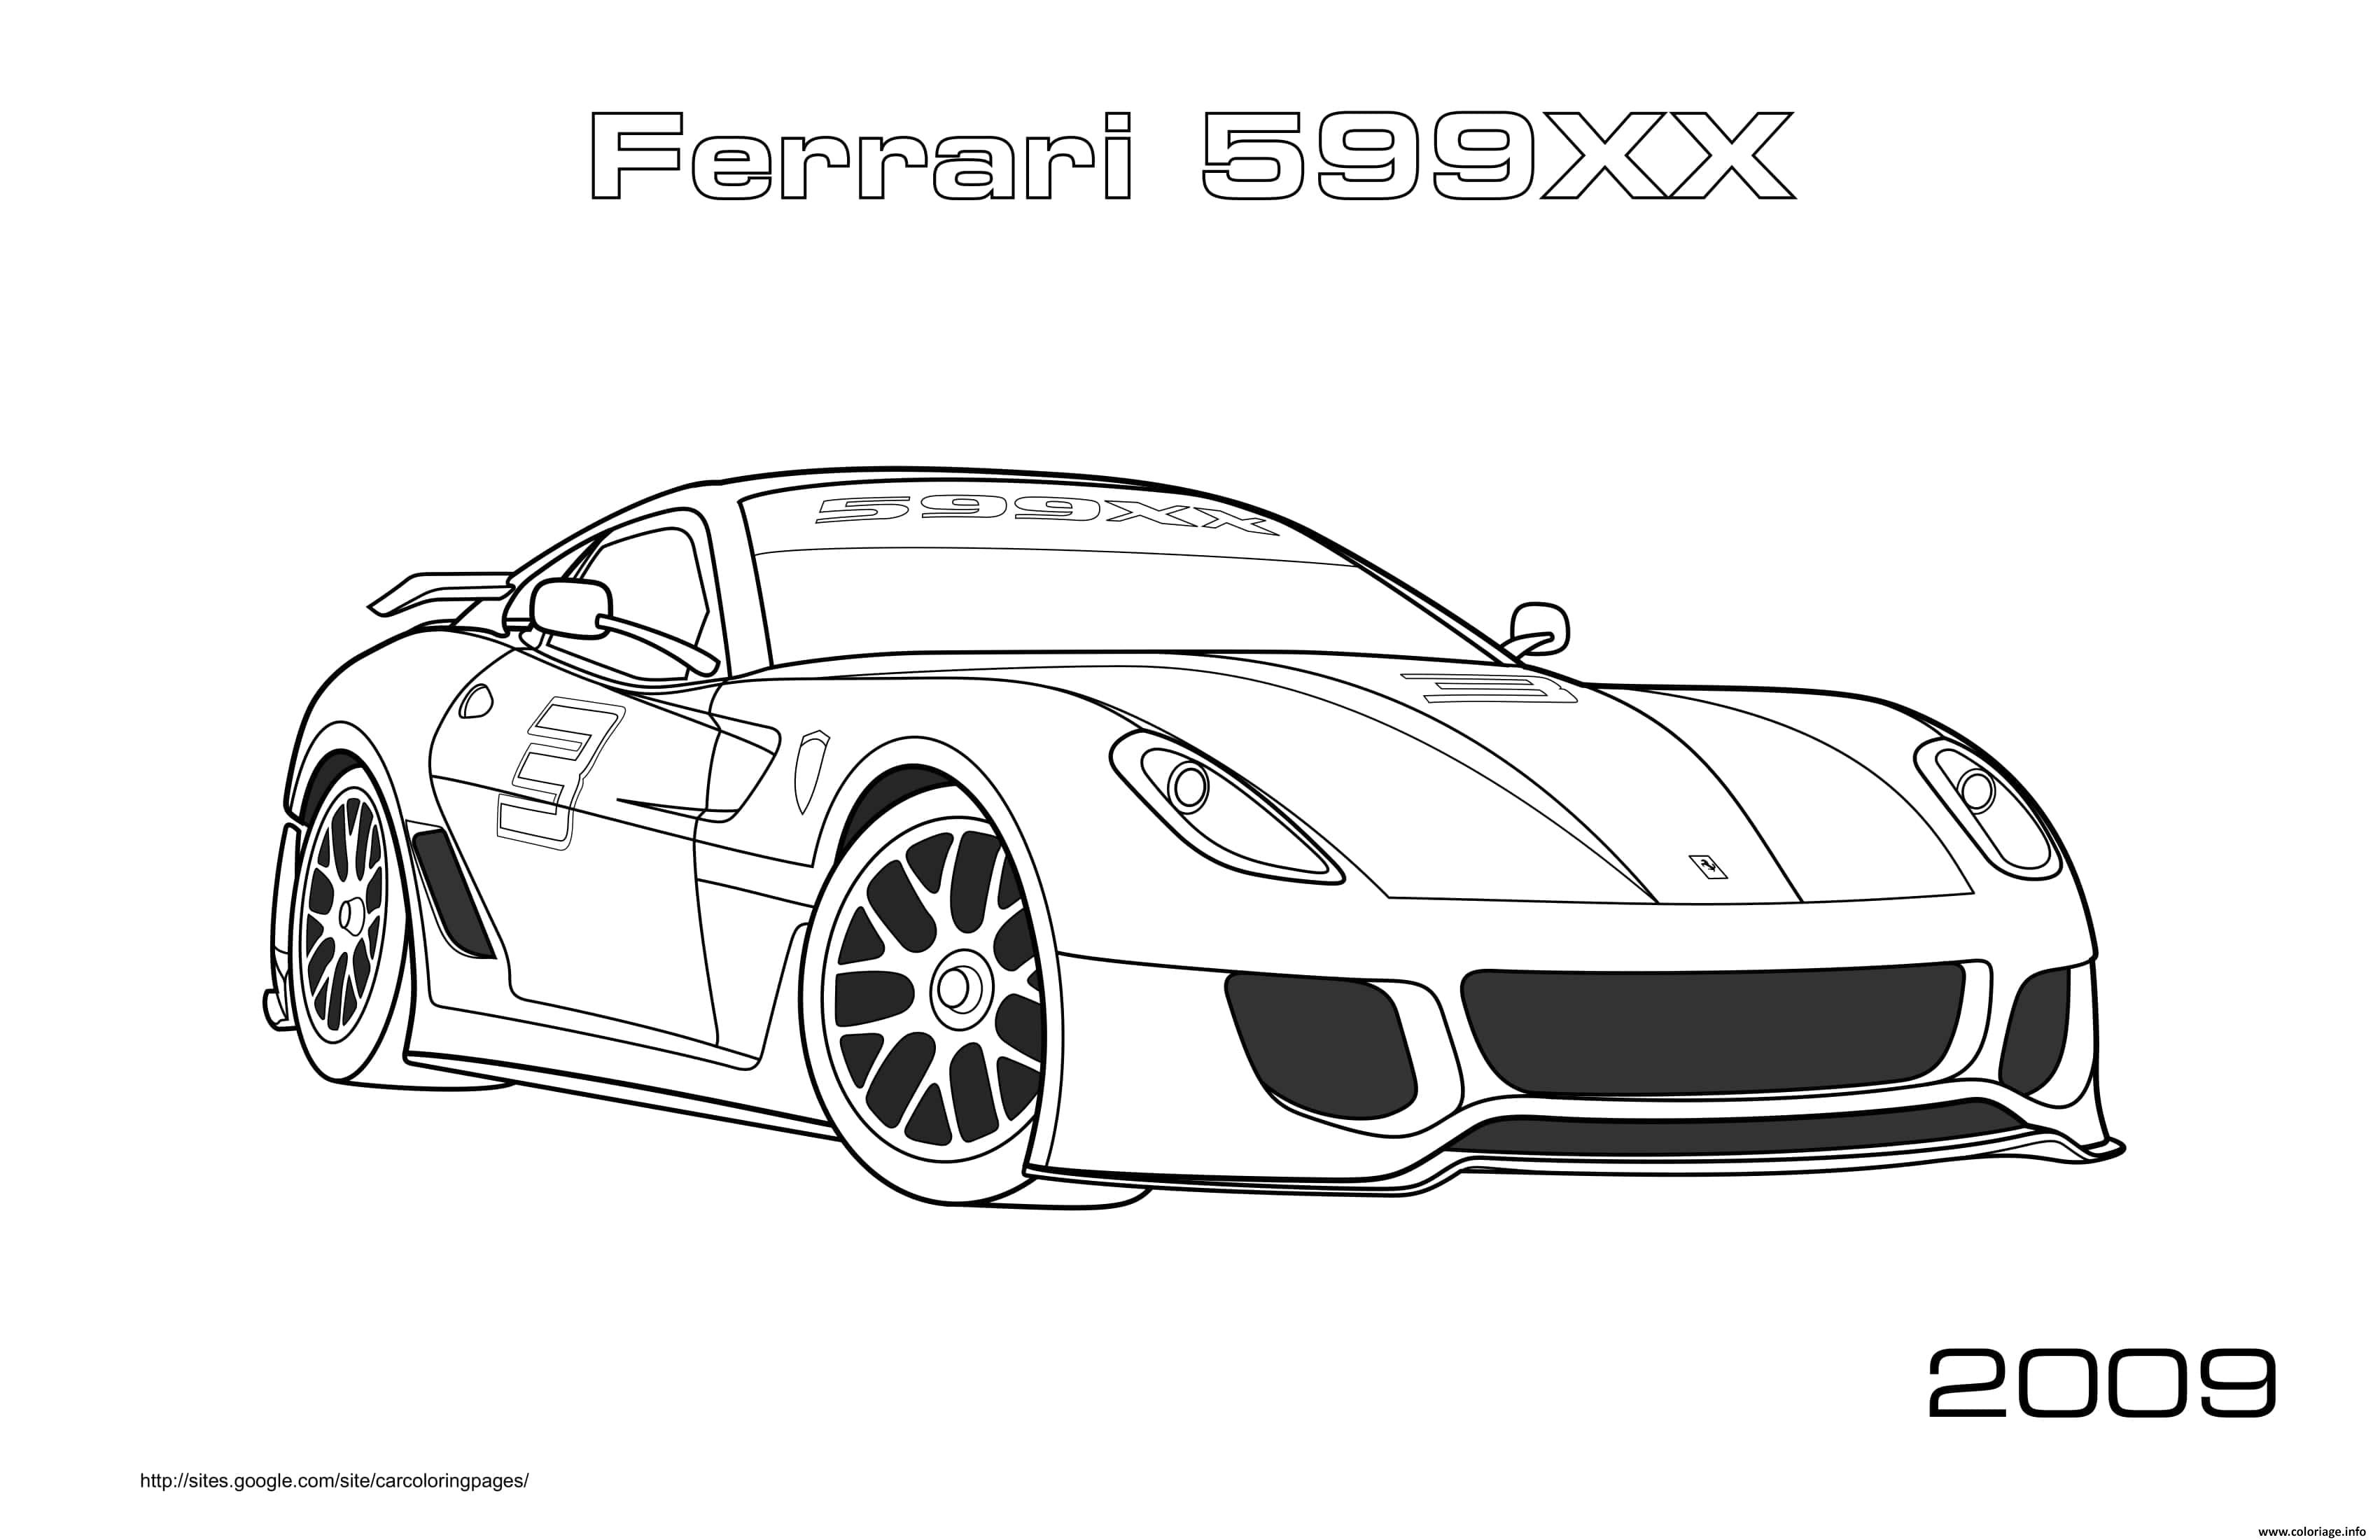 Dessin Voiture Ferrari 599xx 2009 Coloriage Gratuit à Imprimer